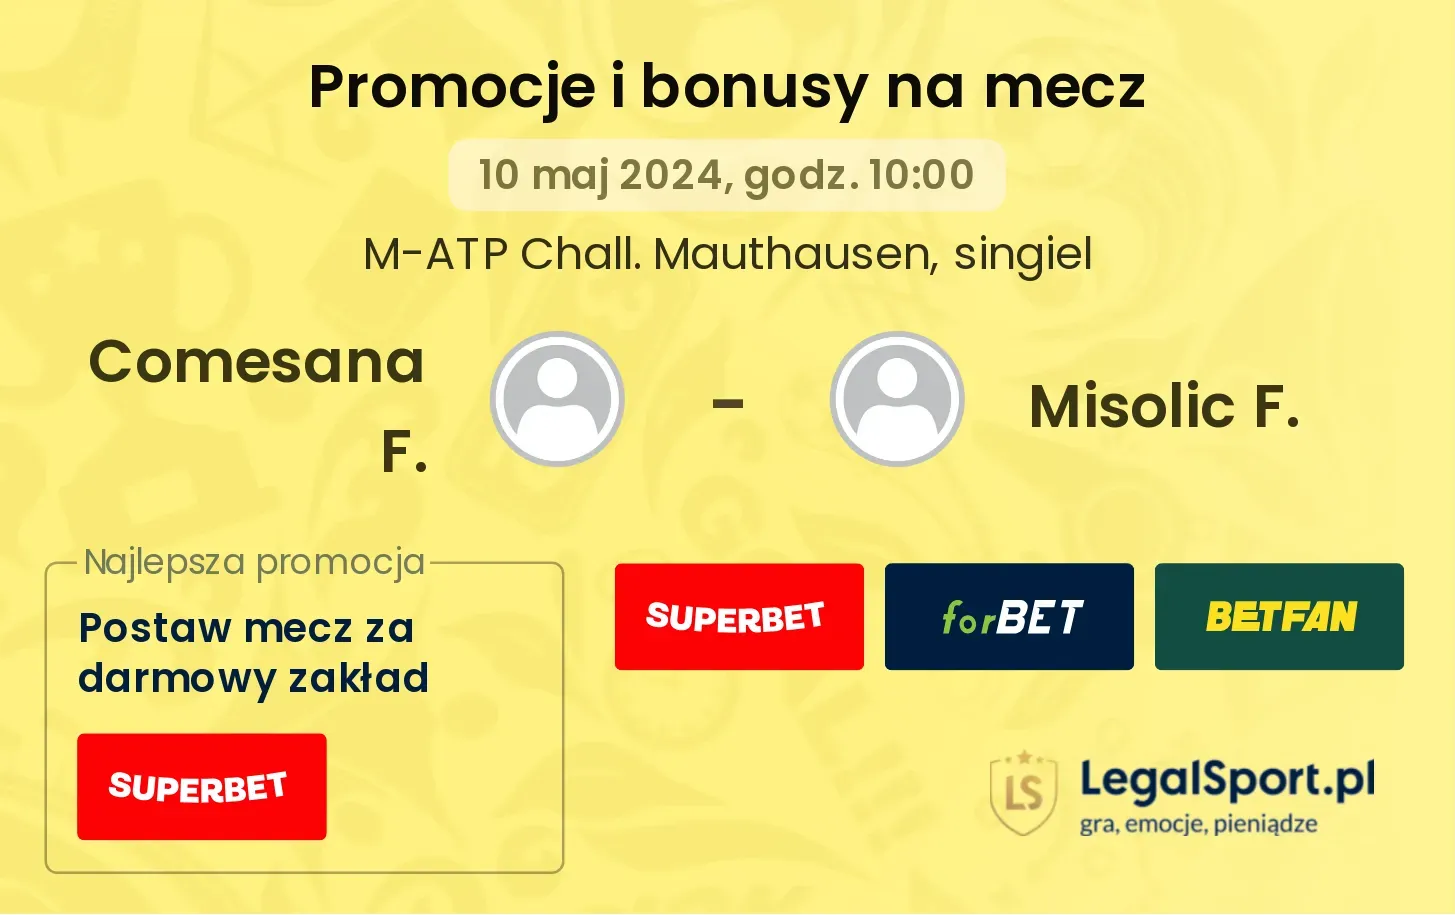 Comesana F. - Misolic F. promocje bonusy na mecz